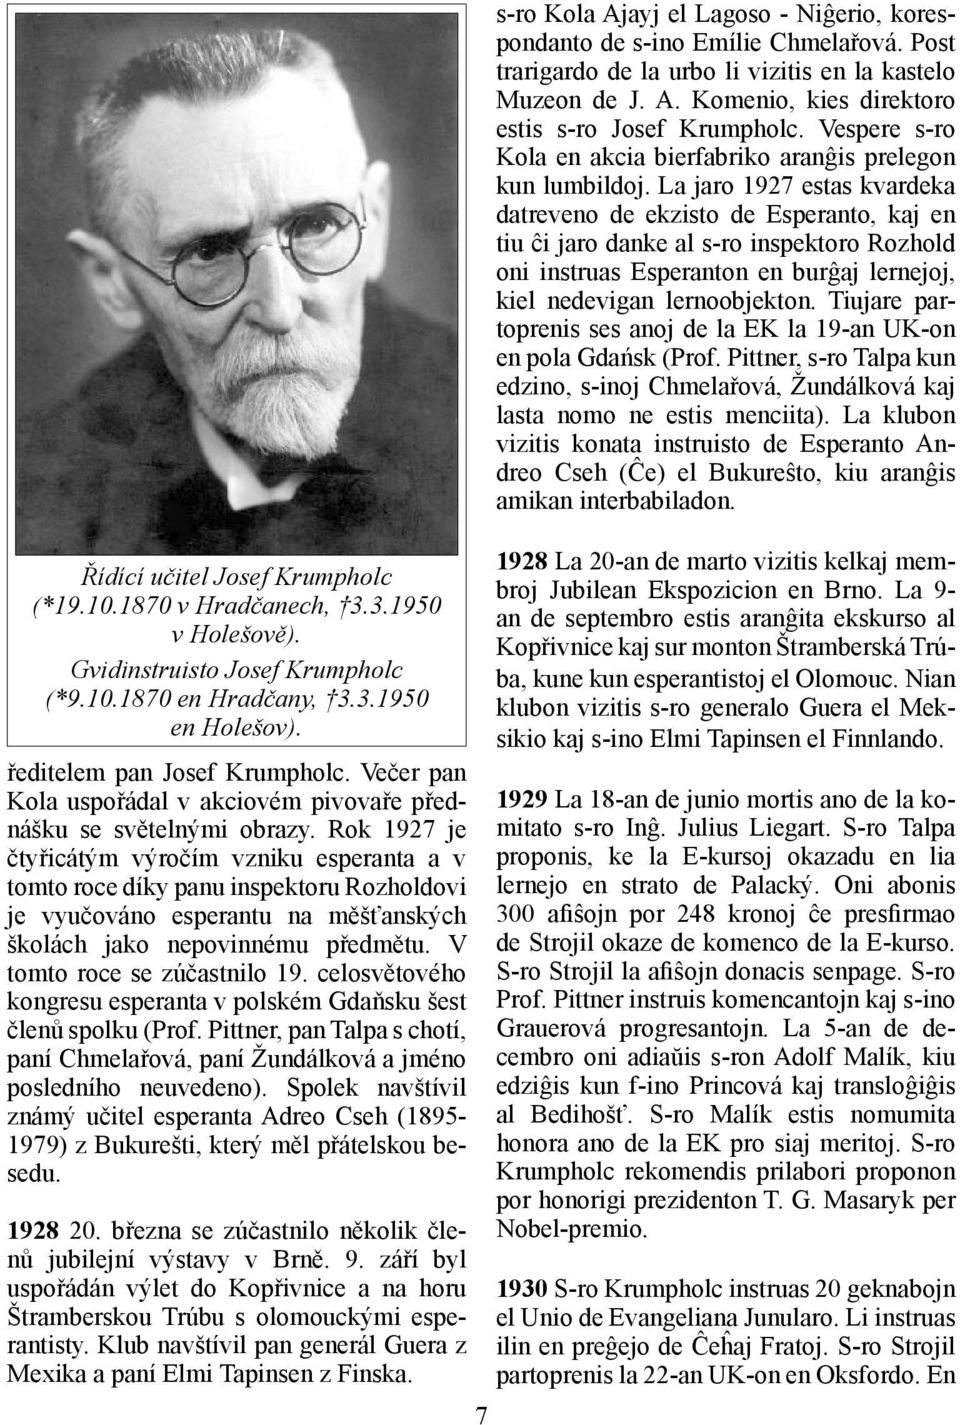 Rok 1927 je čtyřicátým výročím vzniku esperanta a v tomto roce díky panu inspektoru Rozholdovi je vyučováno esperantu na měšťanských školách jako nepovinnému předmětu. V tomto roce se zúčastnilo 19.